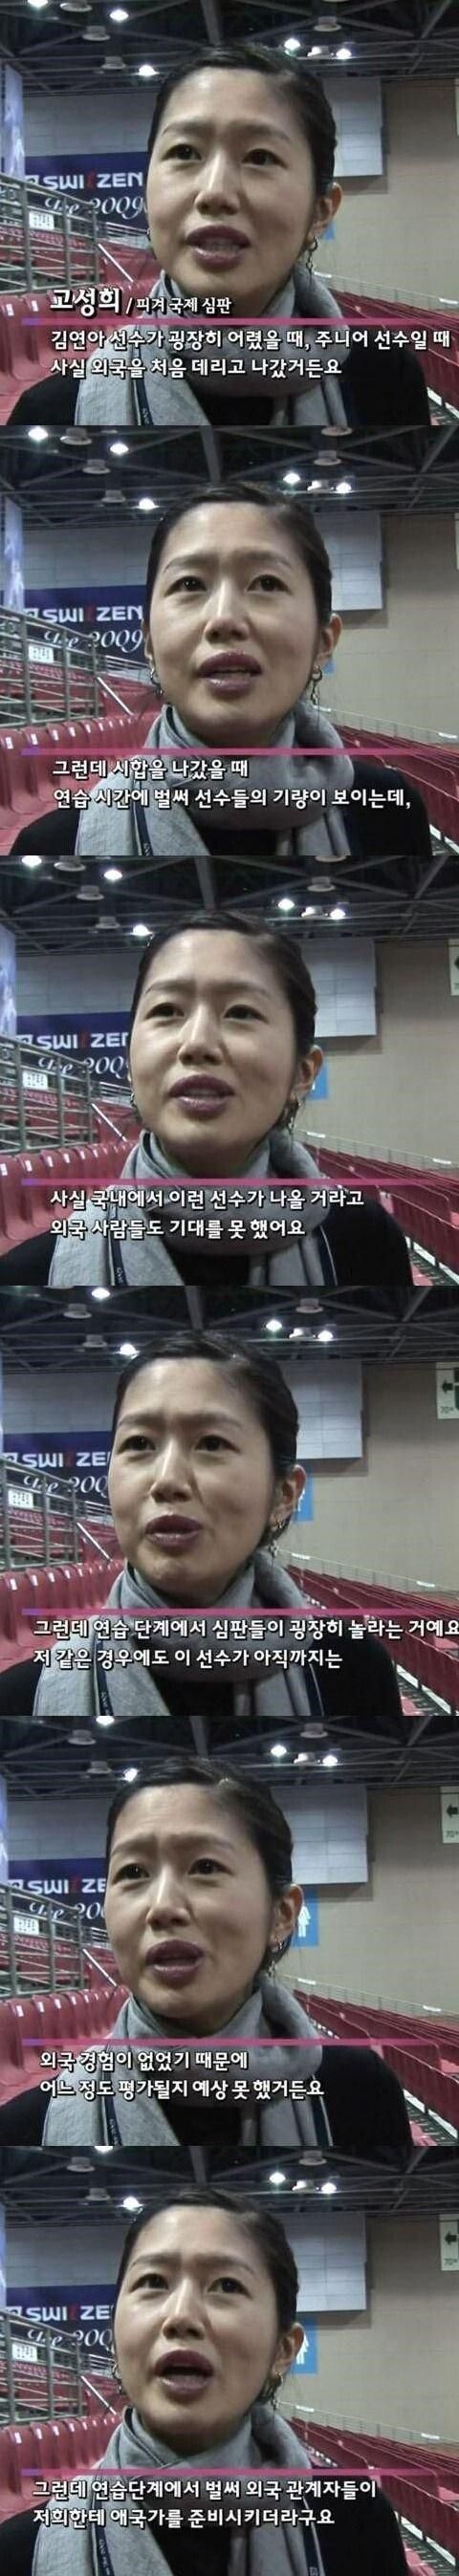 김연아가 국제대회 처음 나갔을 때 해외 반응.
            ㄷㄷ